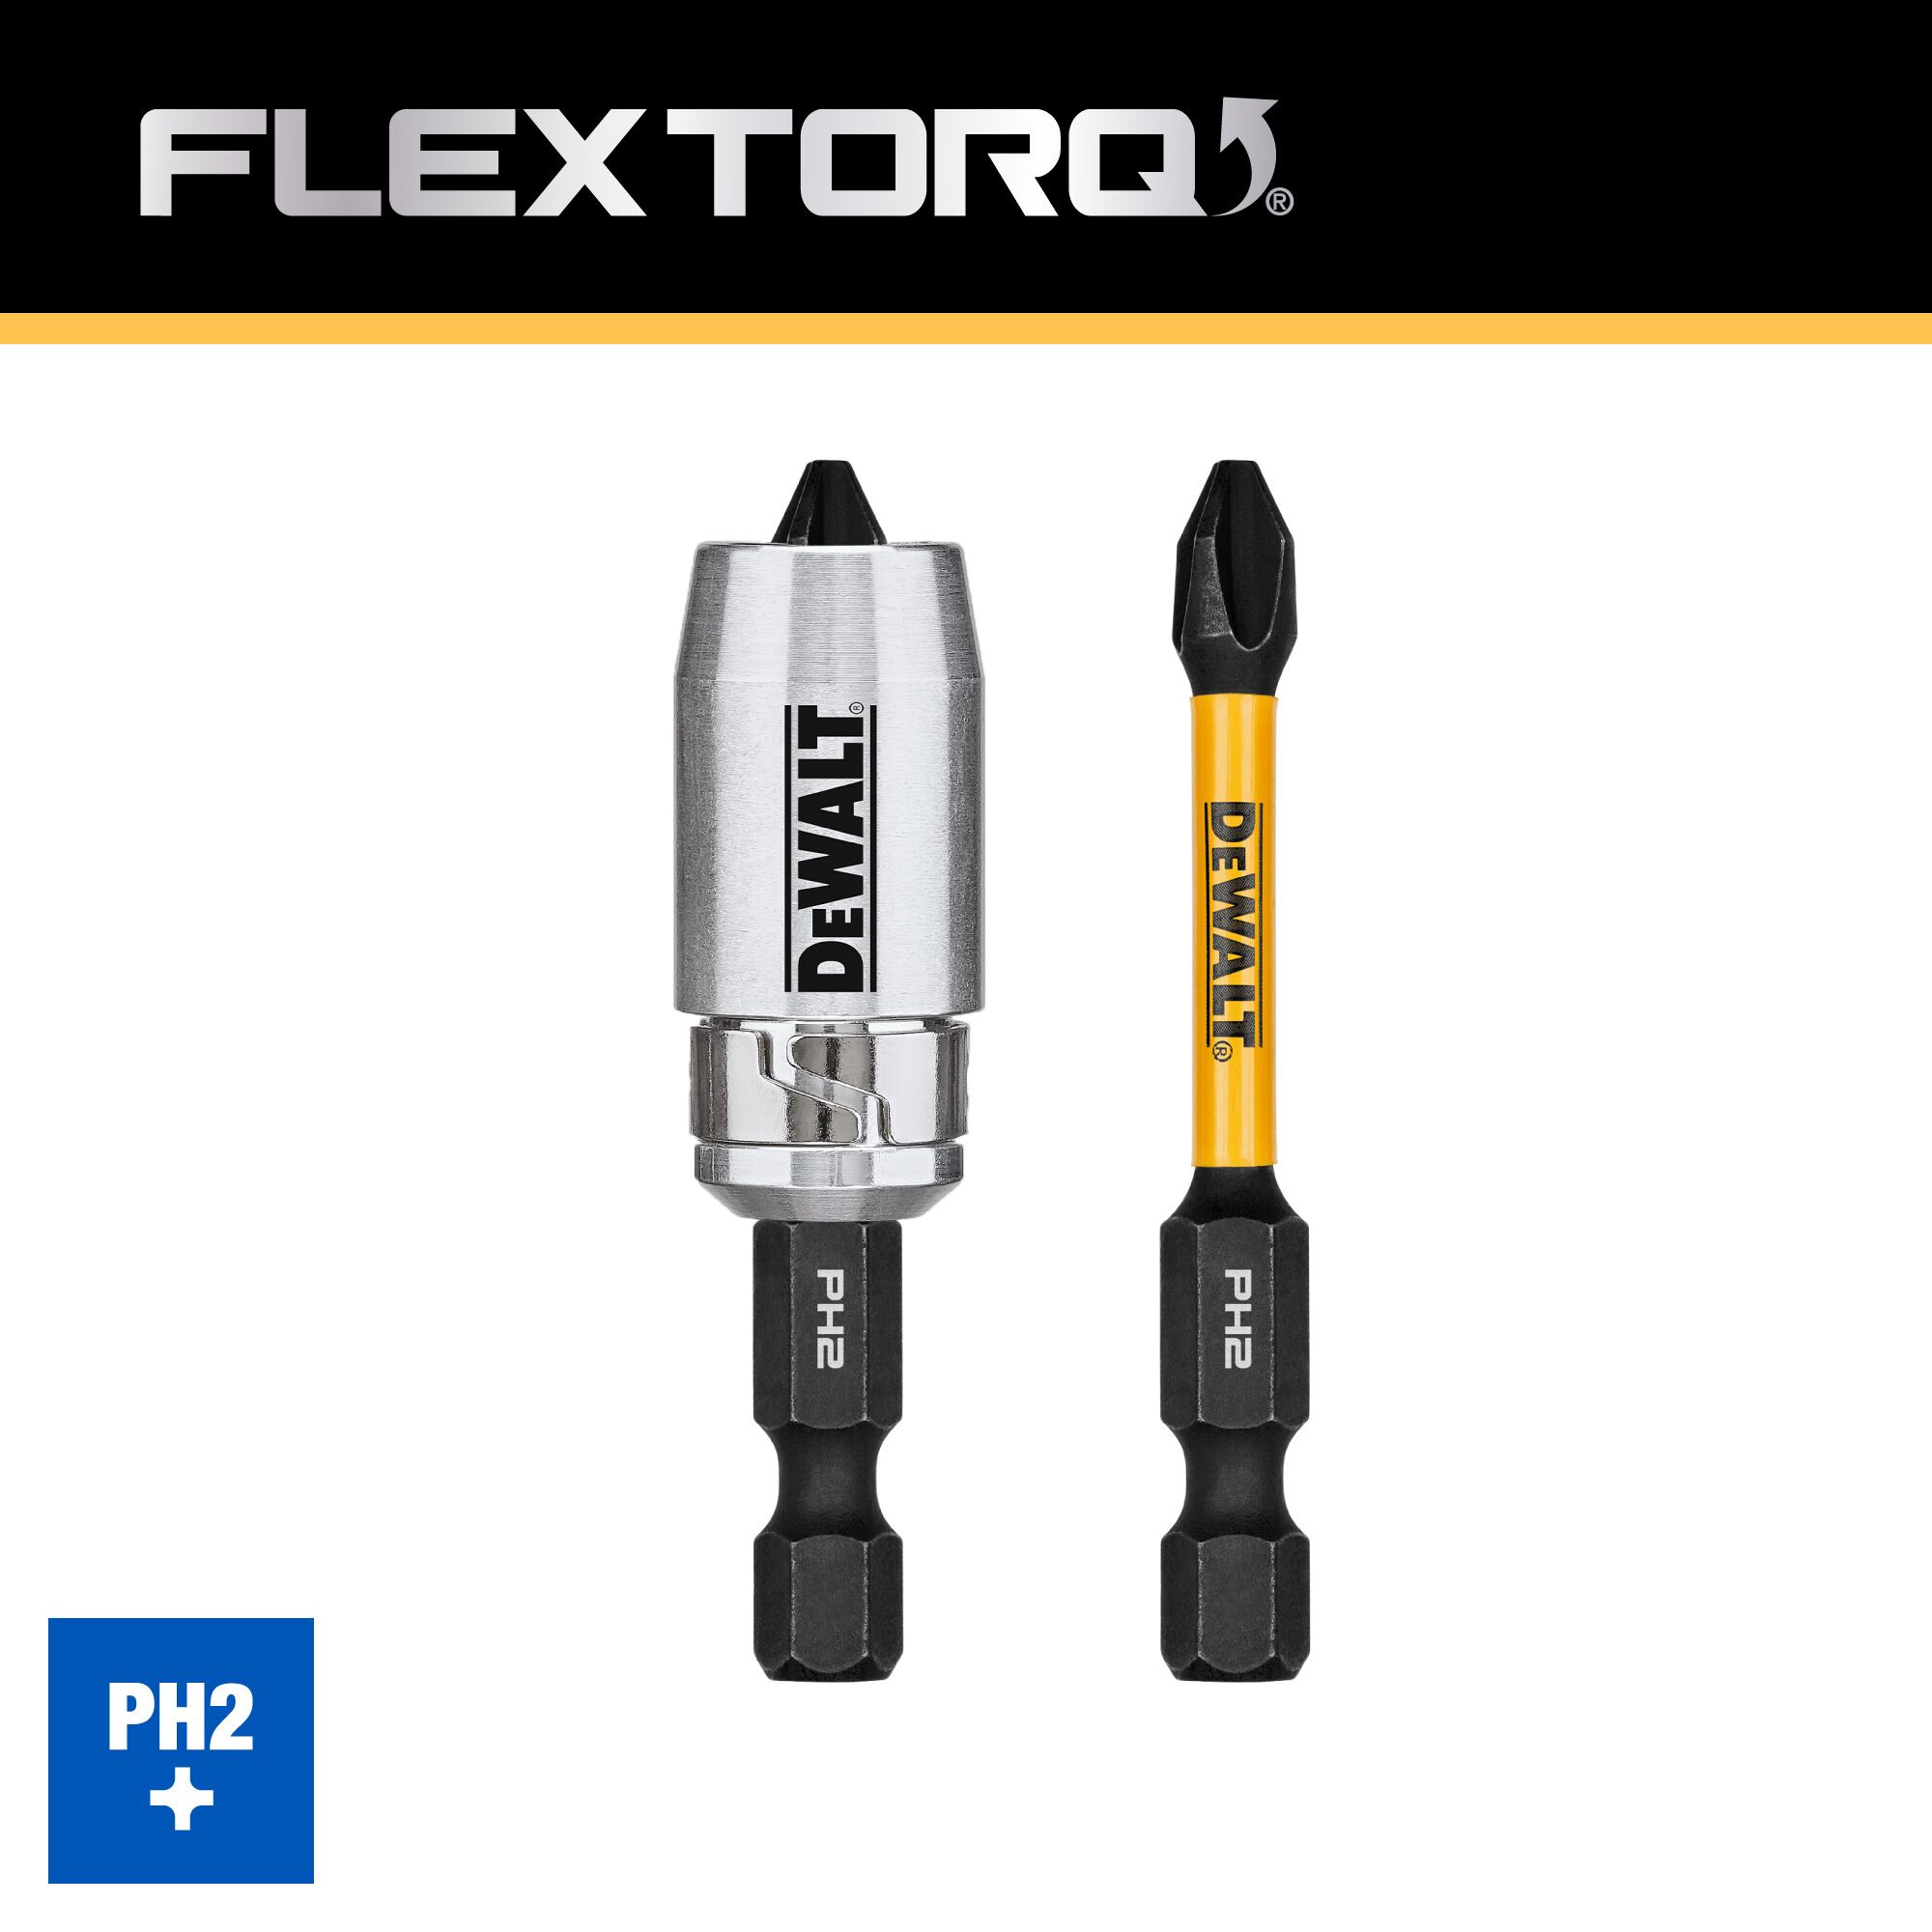 DeWALT Flextorq Screwdriving Bits, PH2, 2.25-In - Power Tools